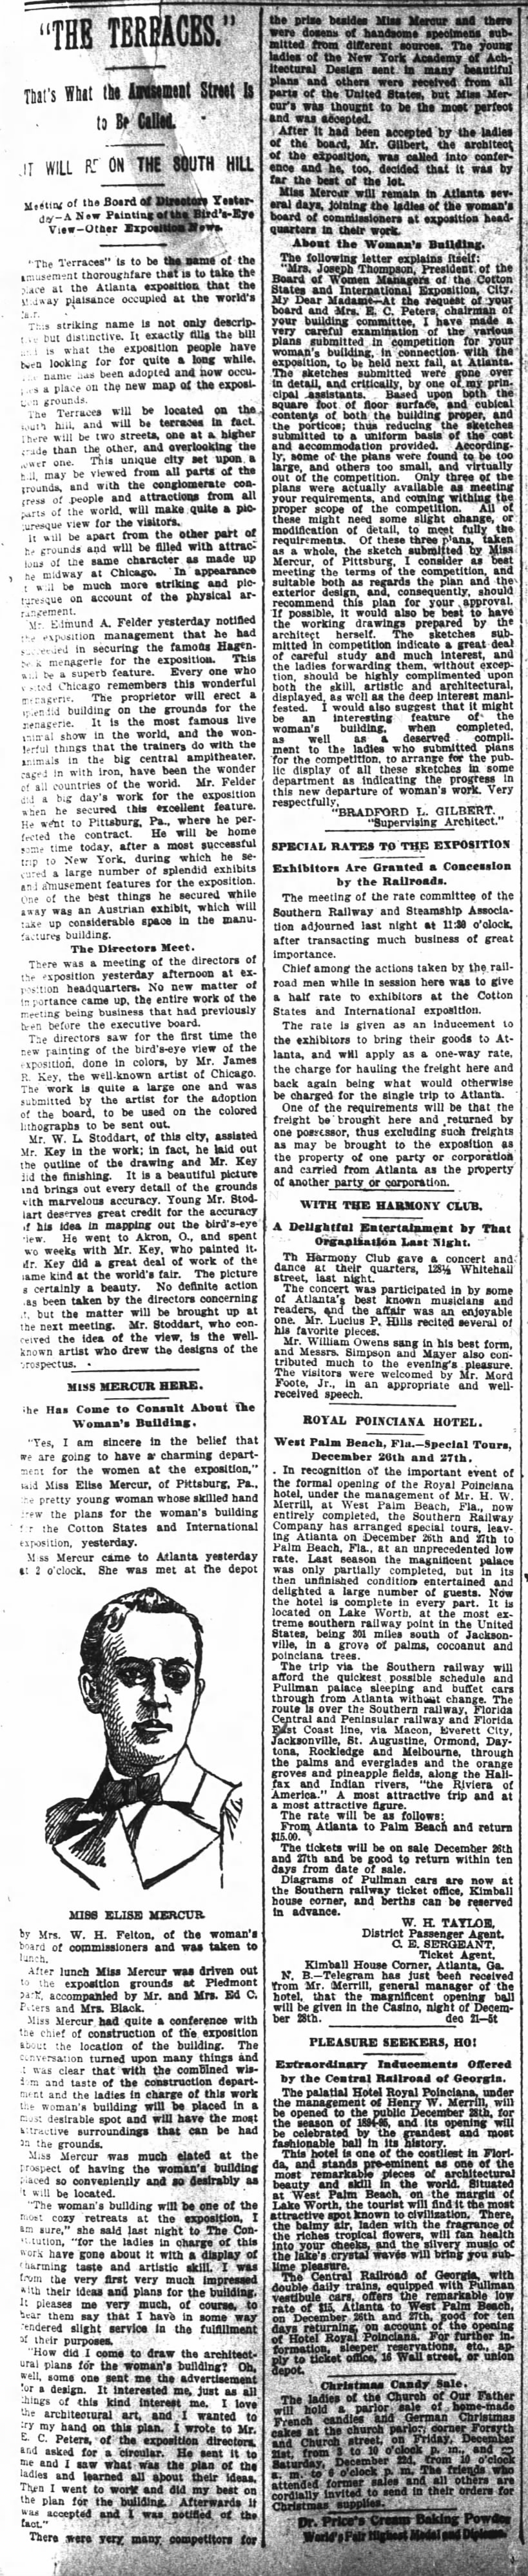 Miss Mercur Here, The Atlanta Constitution, (Atlanta, Georgia), 21 December 1894, p 7